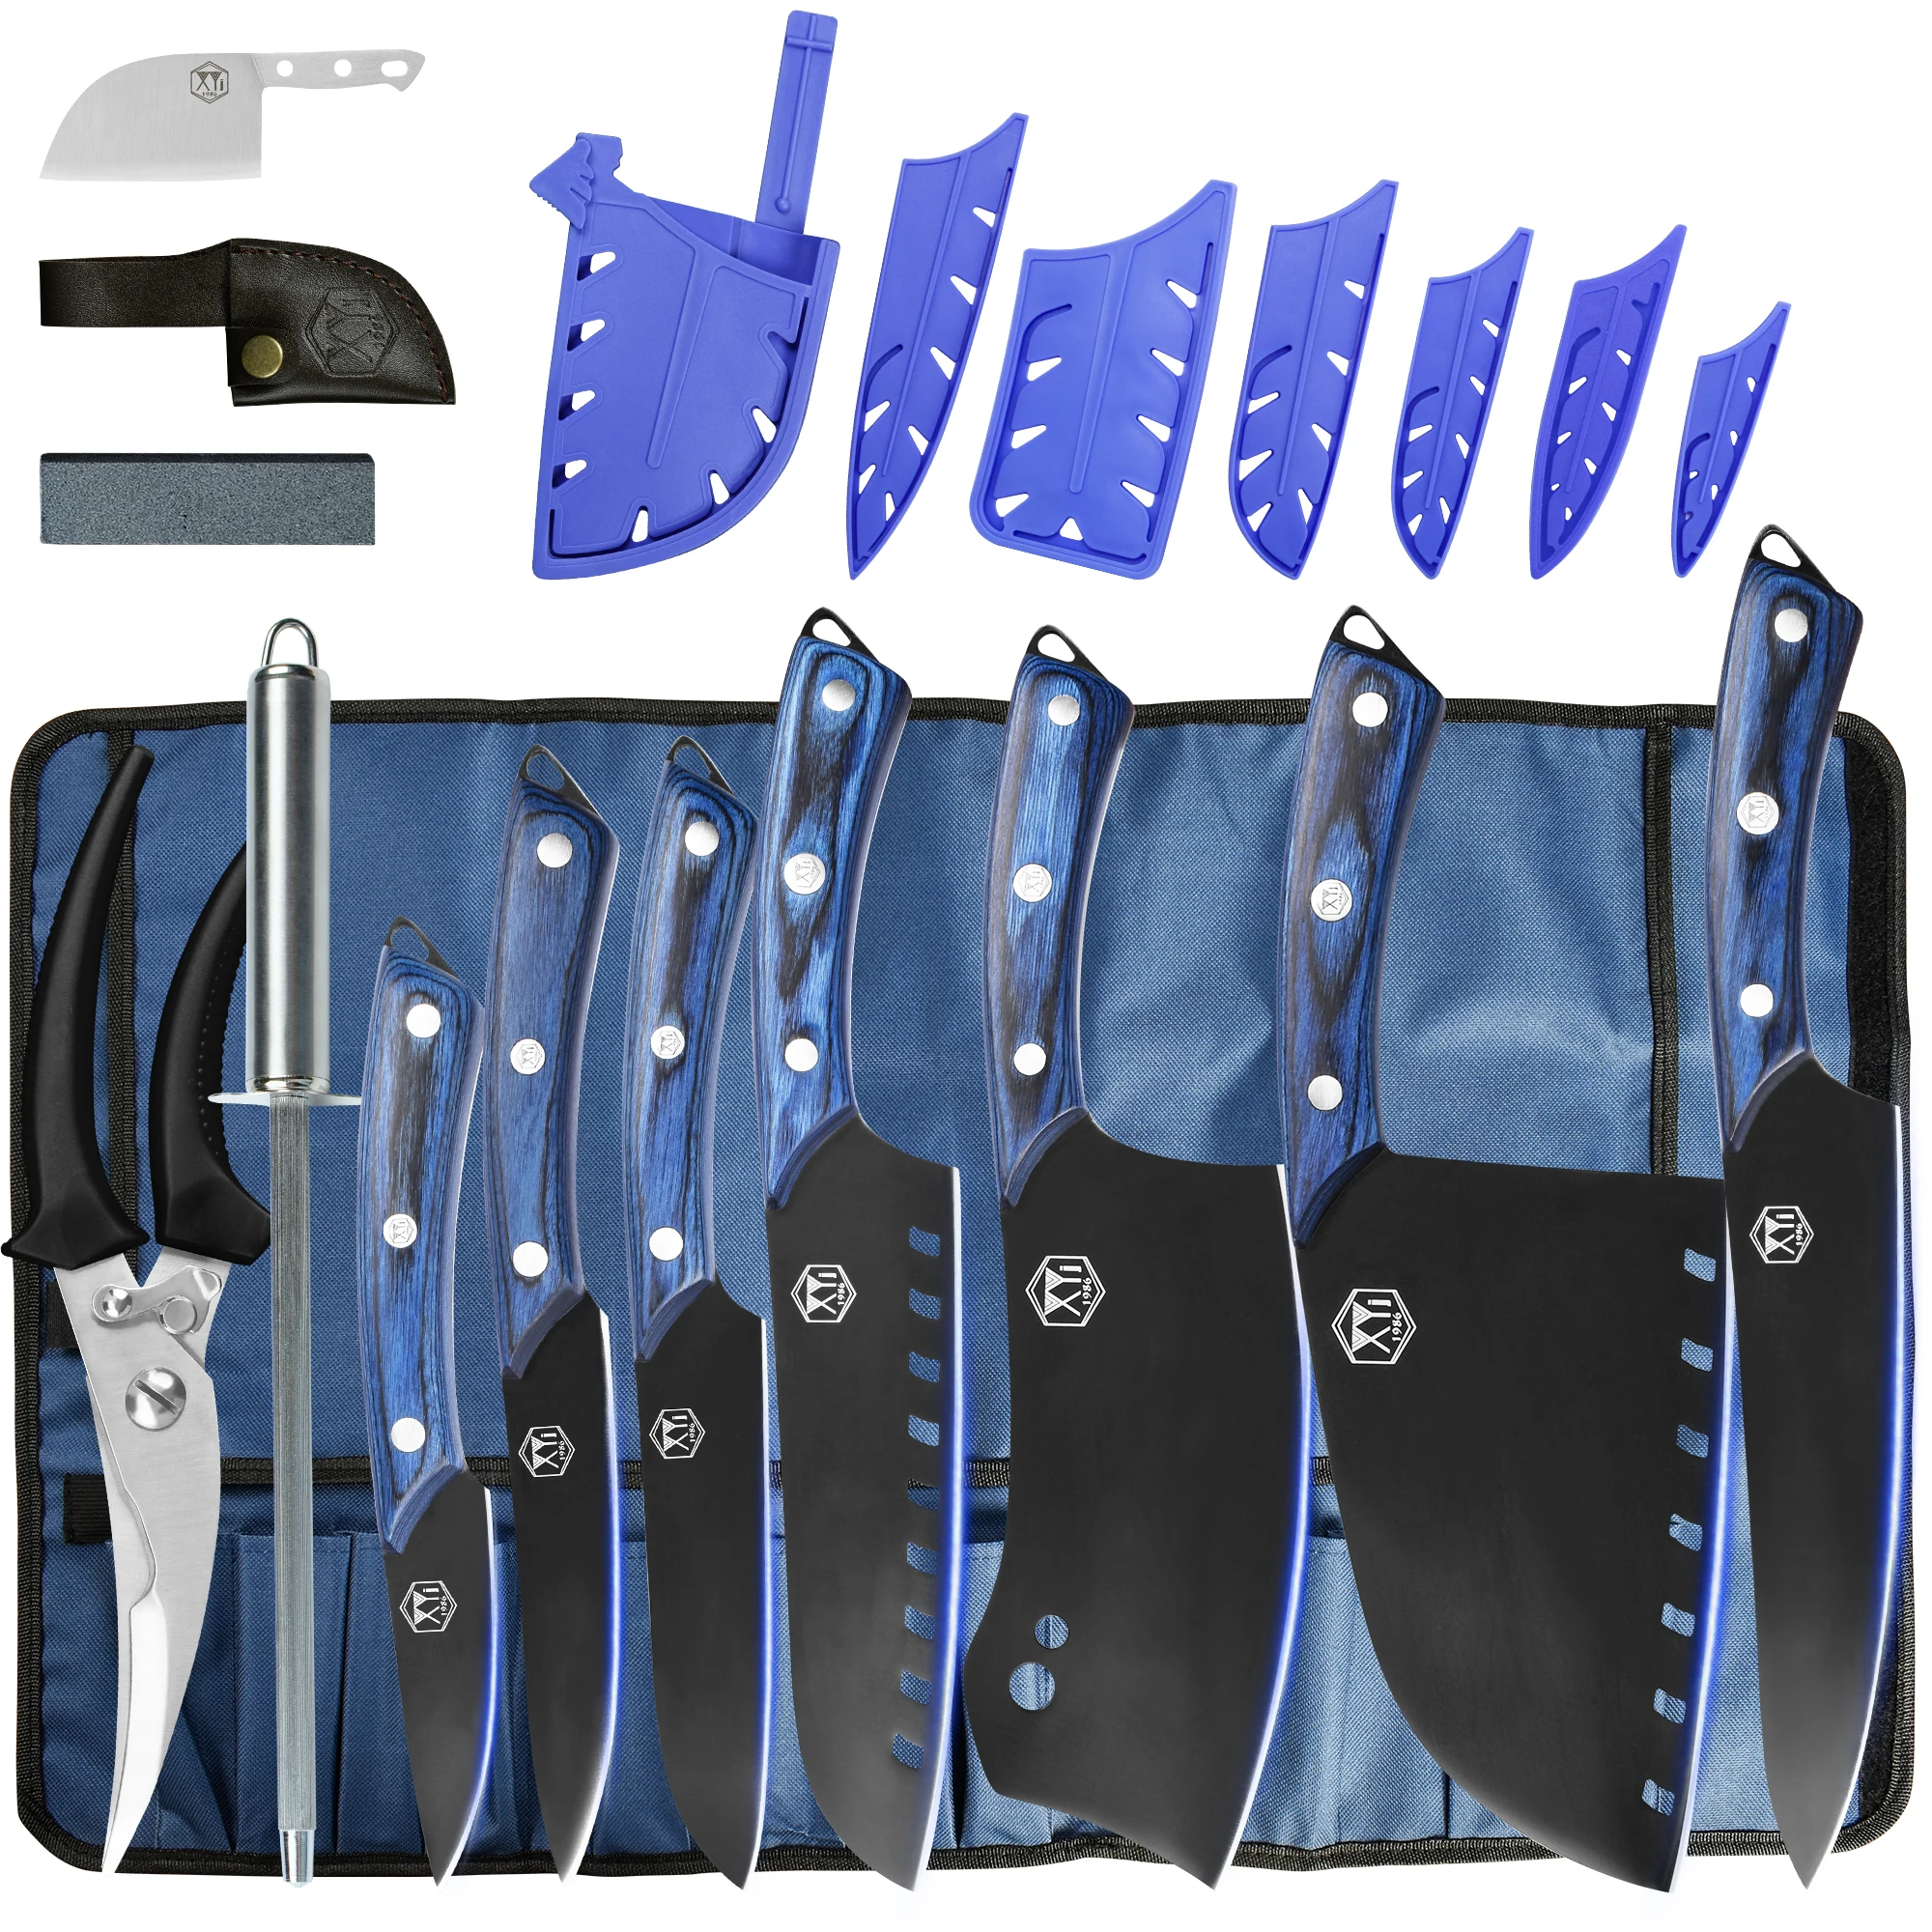 

Набор кухонных ножей XYj из нержавеющей стали, инструменты для столовых приборов, синий мясник, мясник, ножи шеф-повара с рулонным чехлом и ножницами